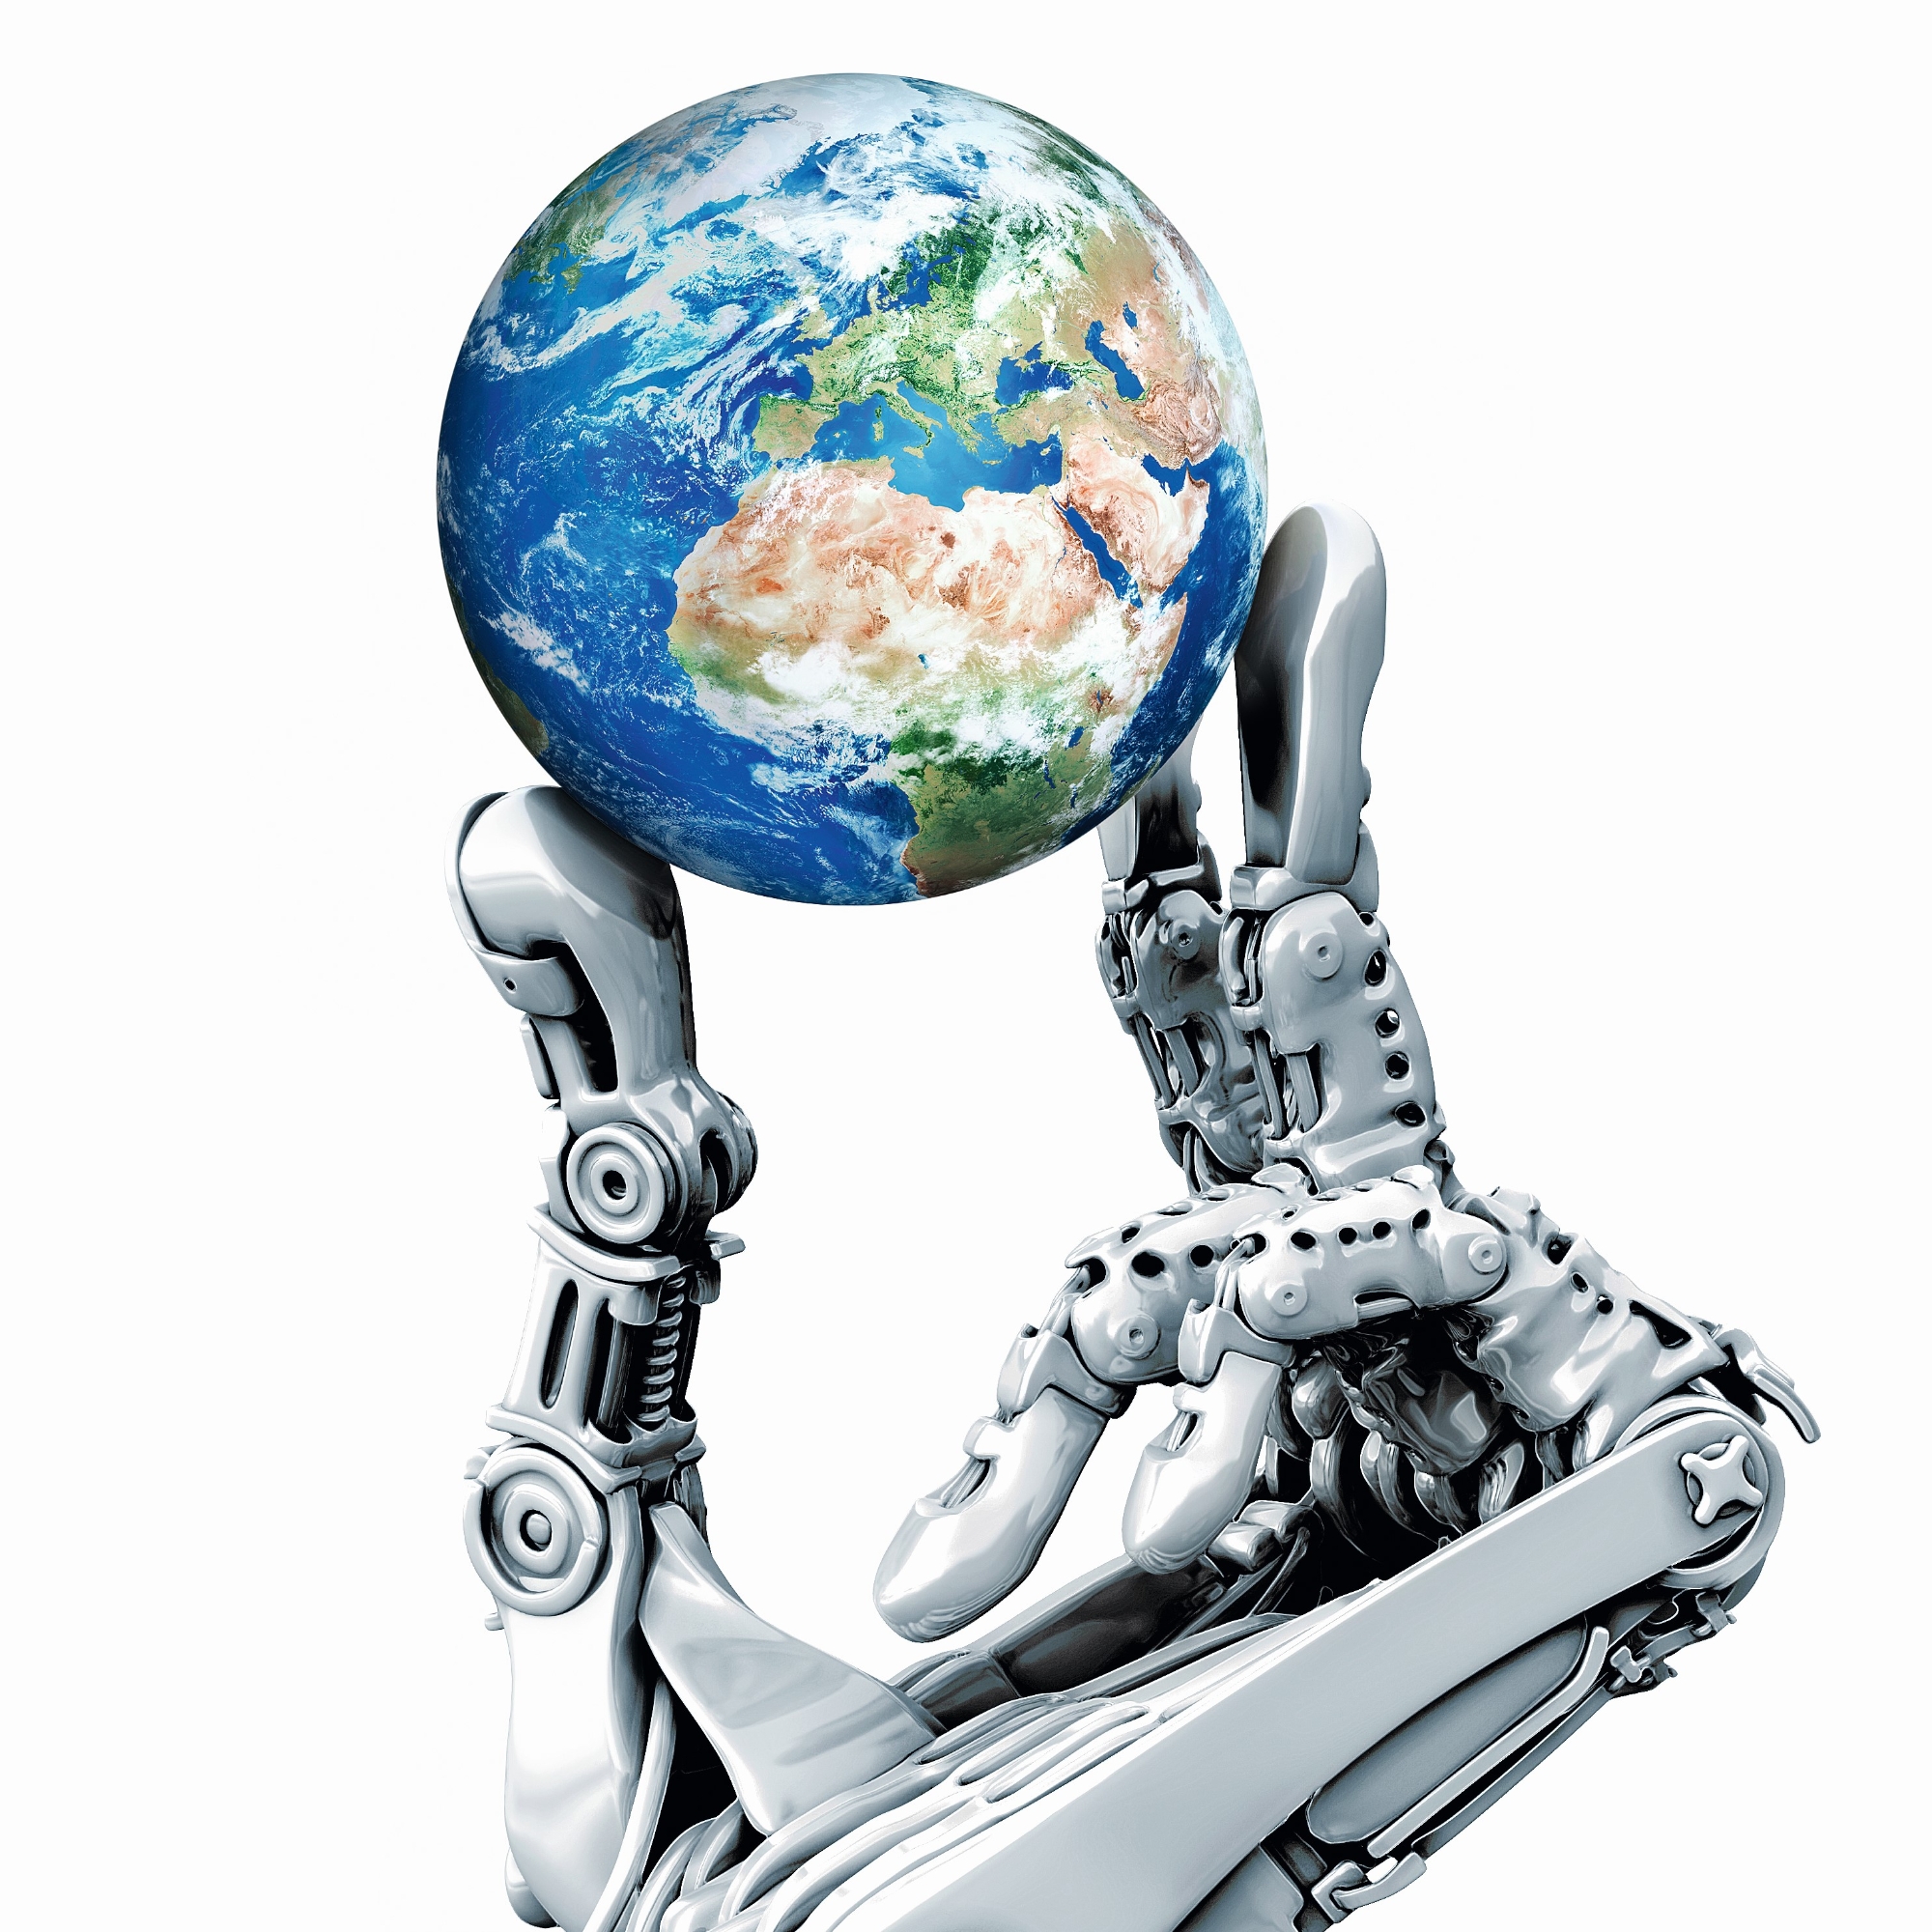 Eine Roboterhand hält eine Weltkugel in den Händen.